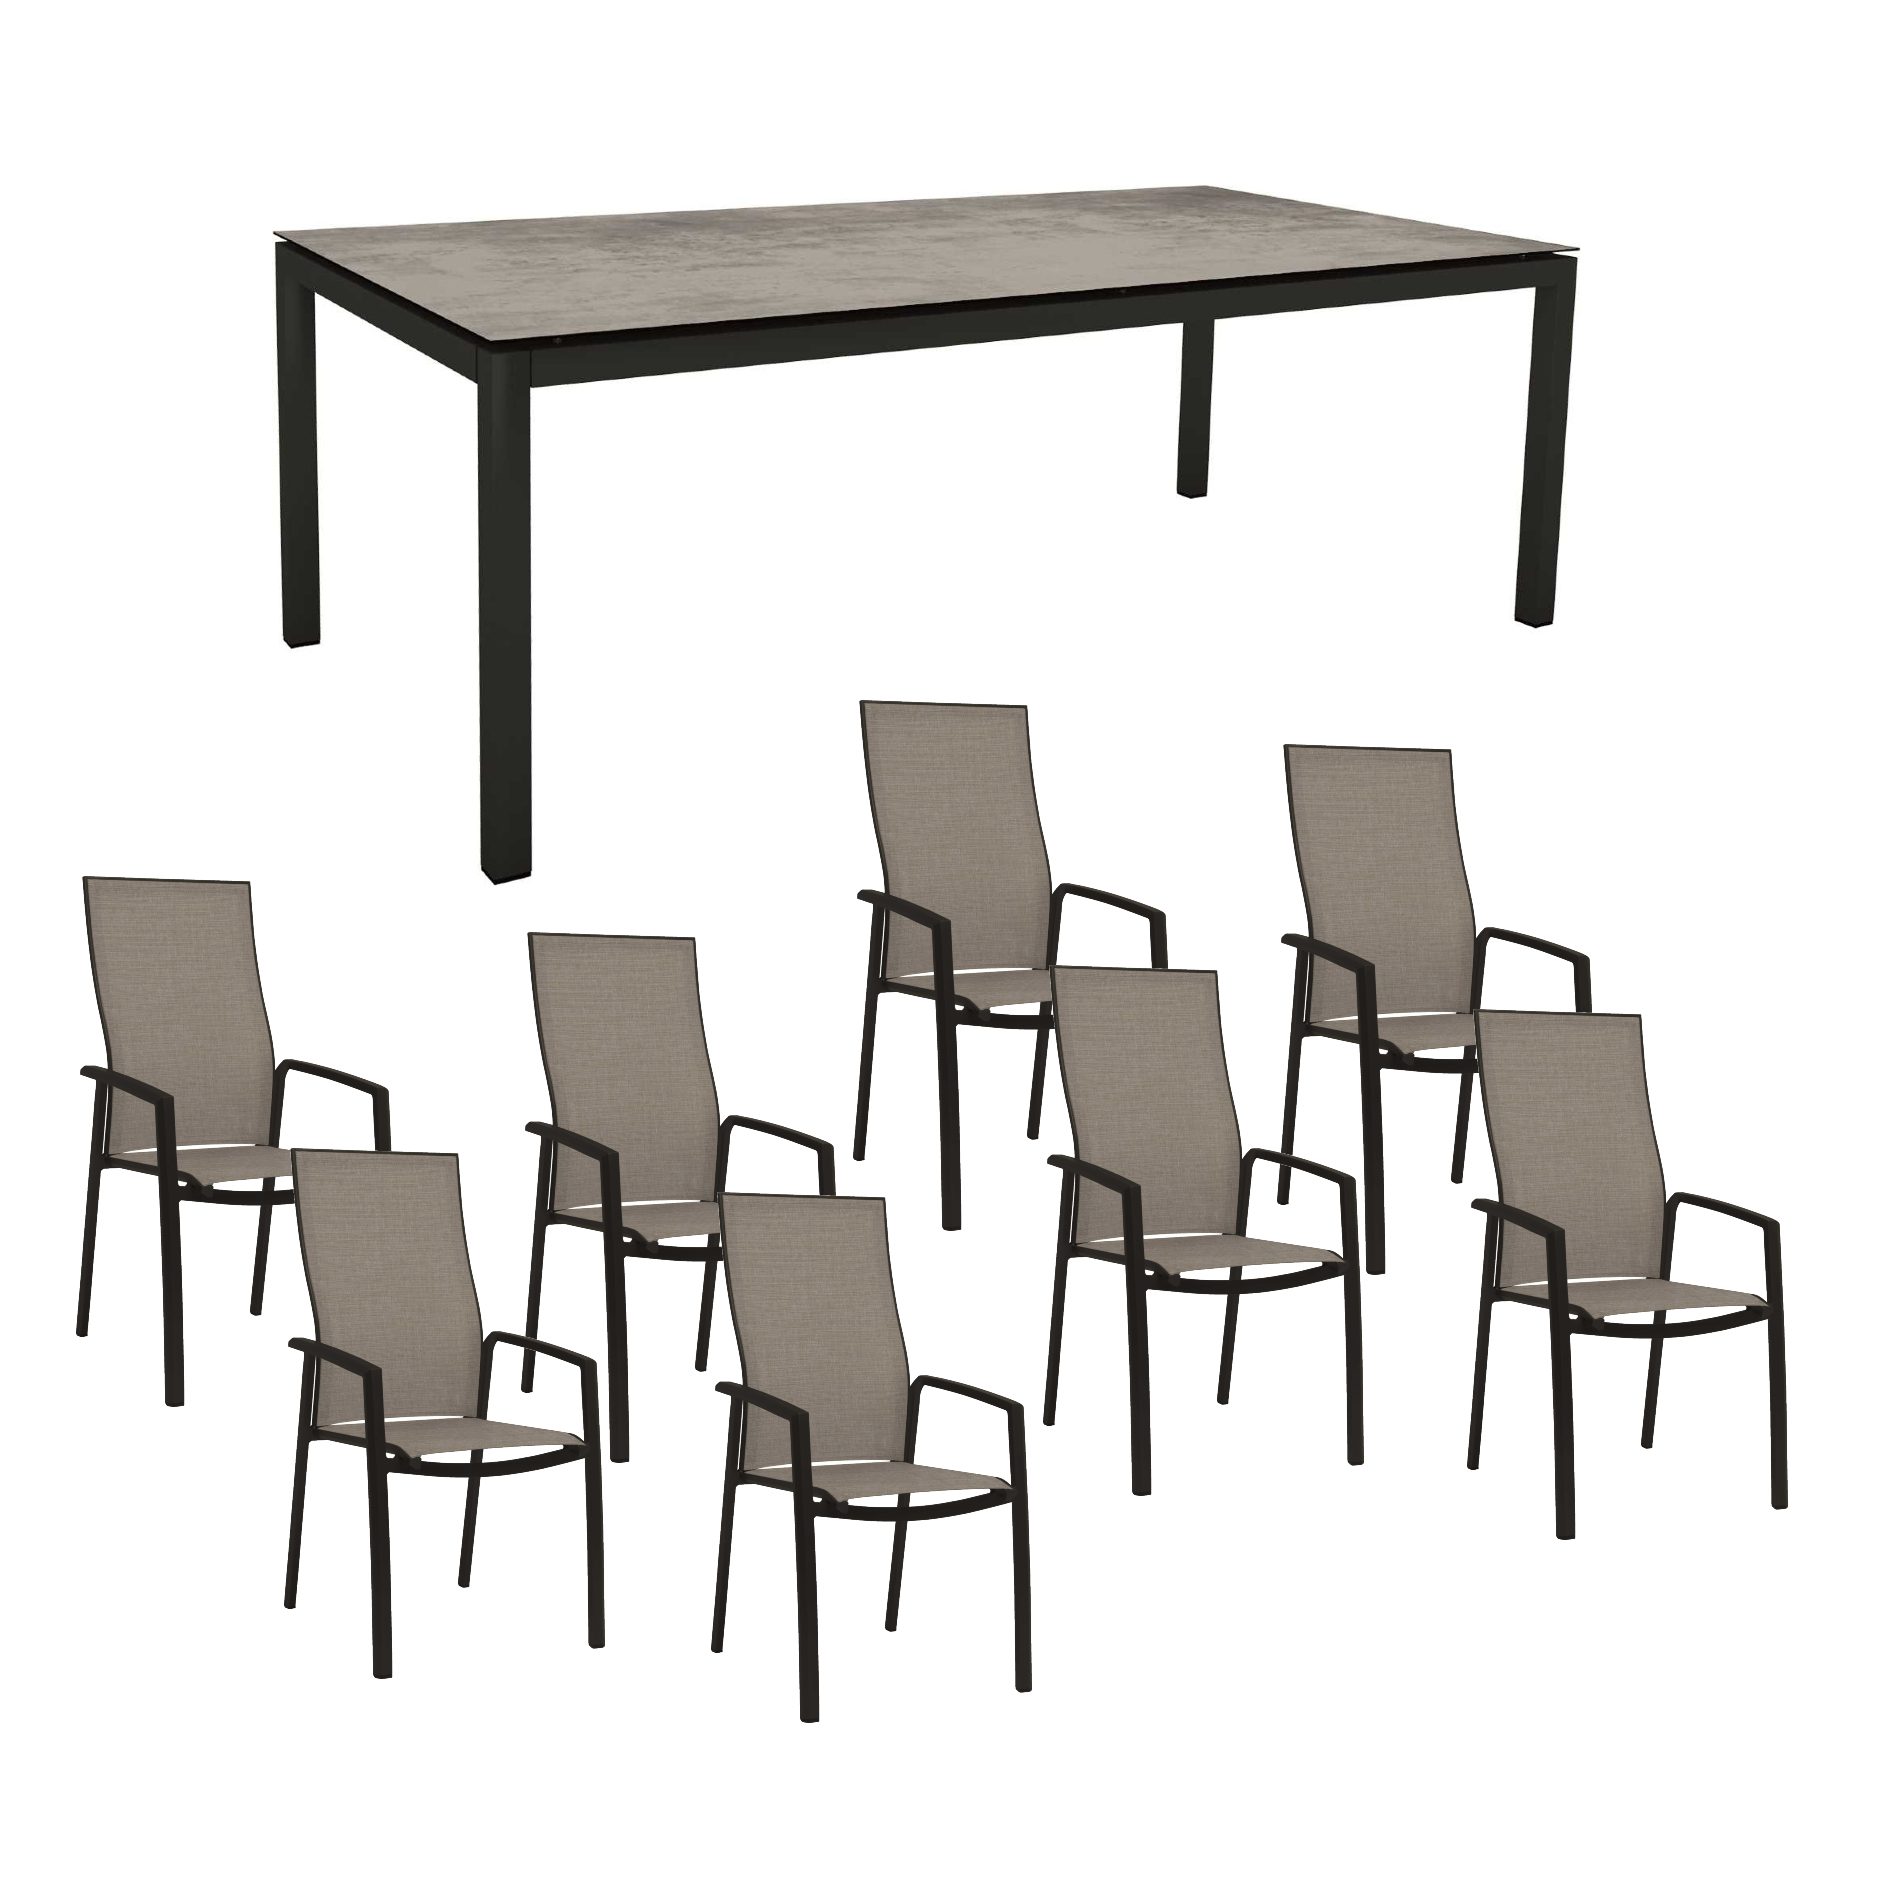 Stern Gartenmöbel-Set mit Hochlehner "Kari", Textilen Leinen grau und Gartentisch 250x100 cm, Gestelle Alu schwarz matt, Tischplatte HPL Zement